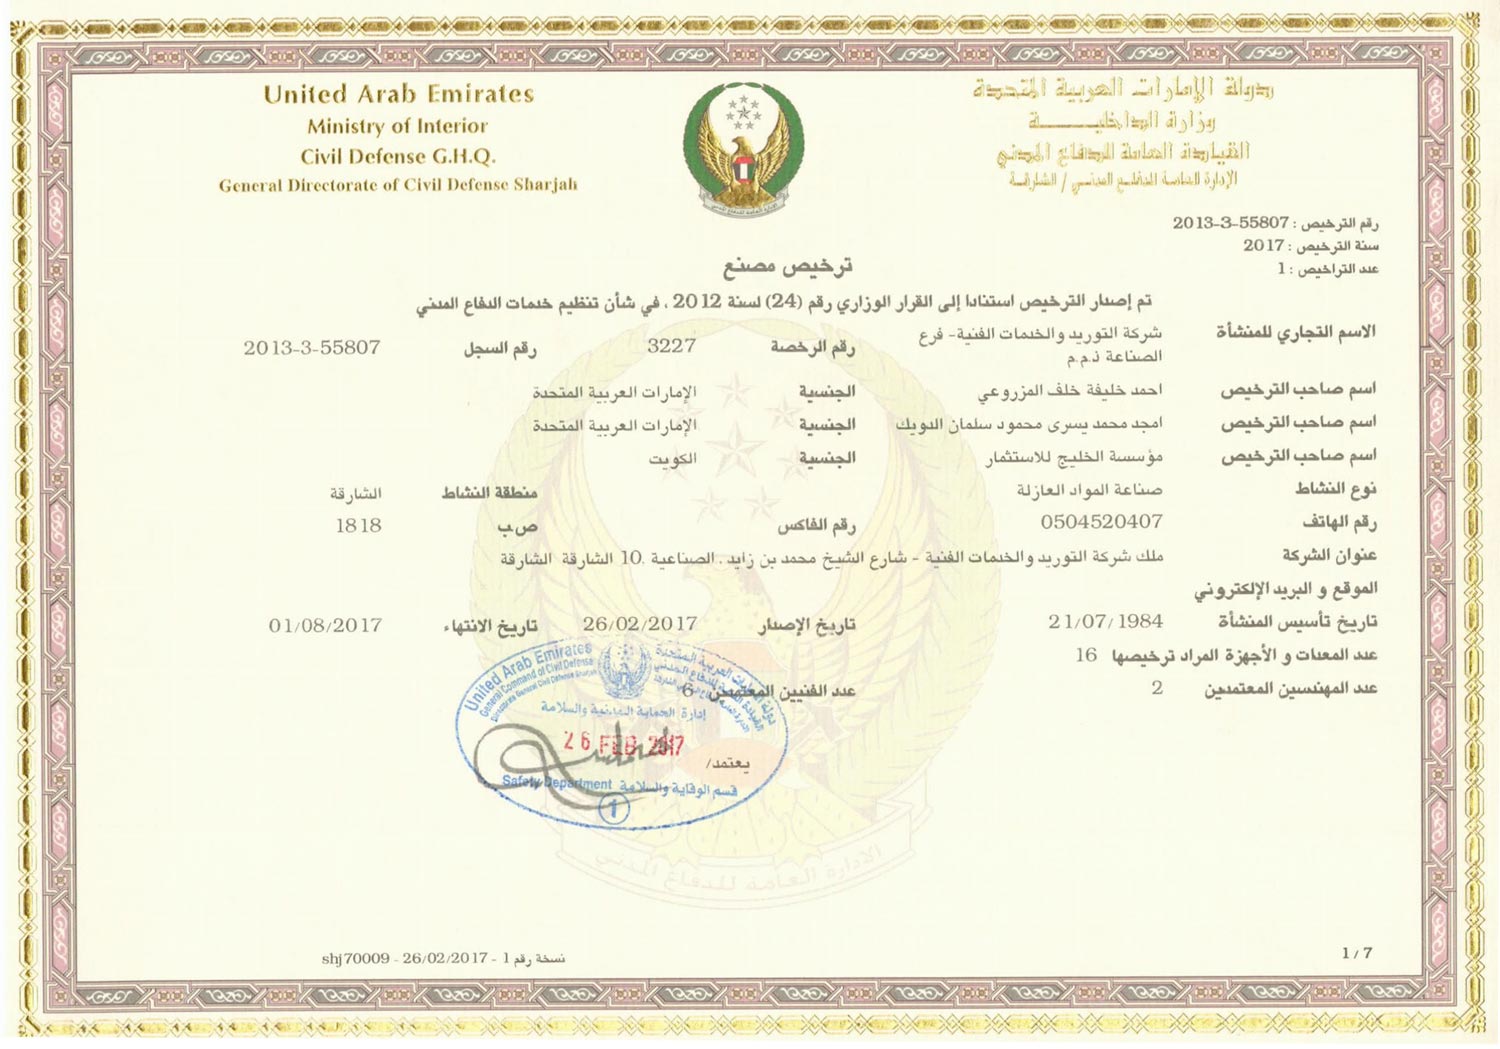 Sharjah Civil Defense Composite Panels